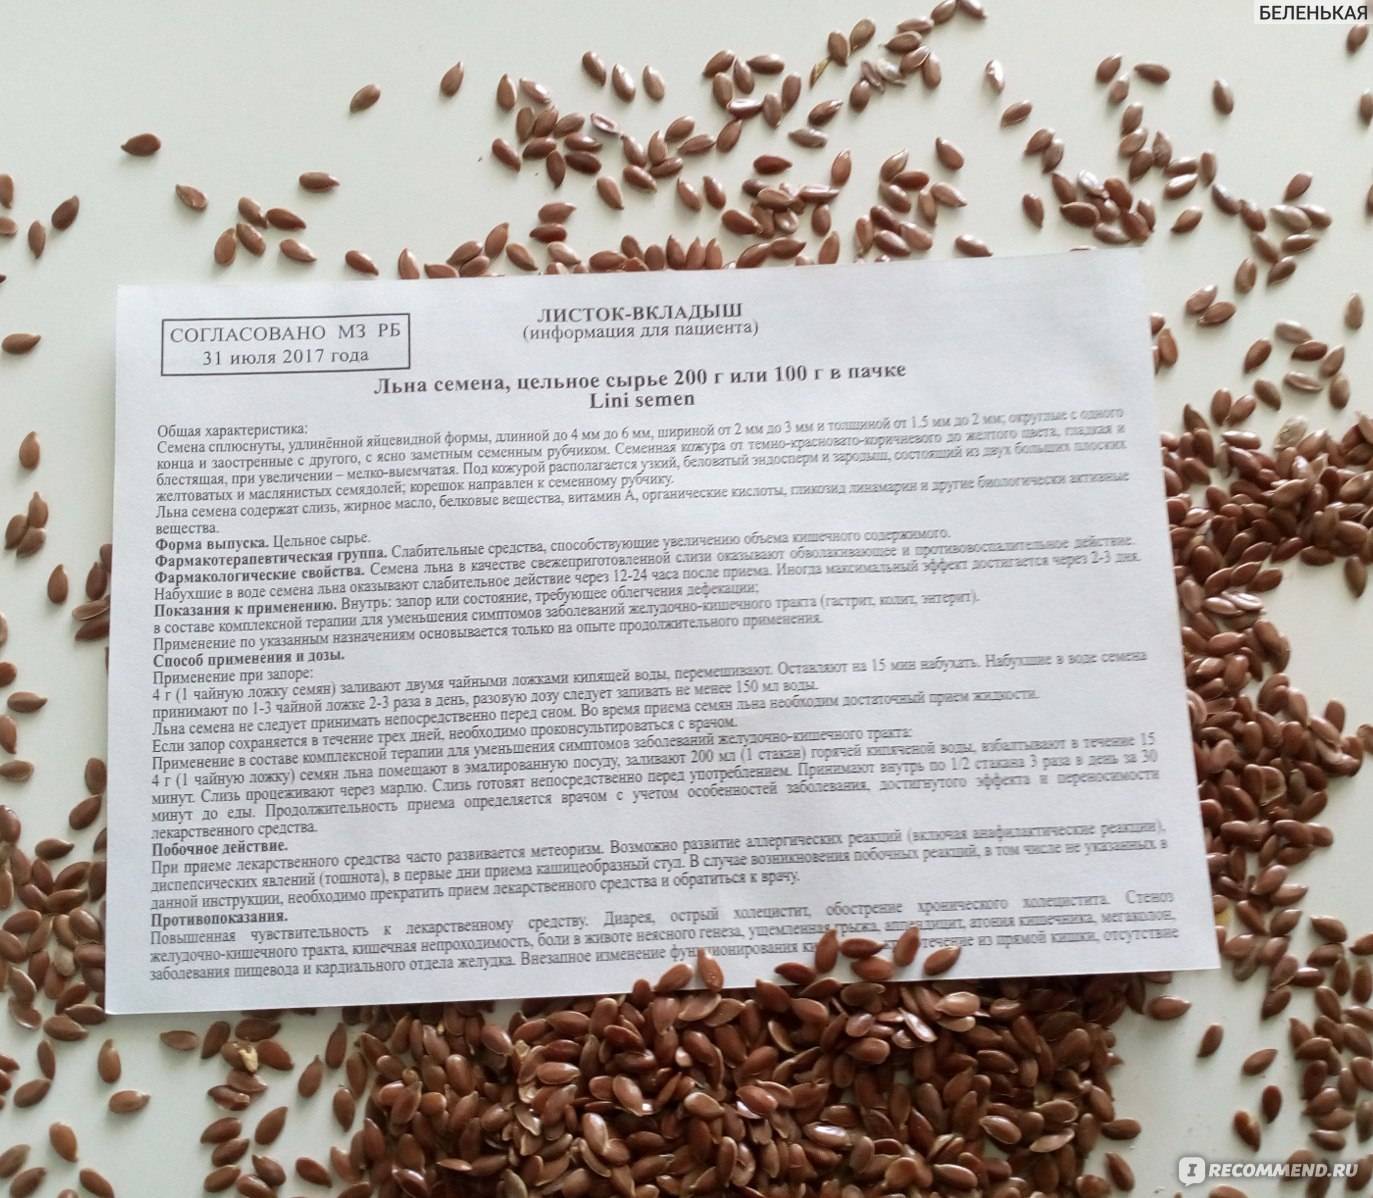 Лечебные свойства семян льна, применение и противопоказания :: syl.ru